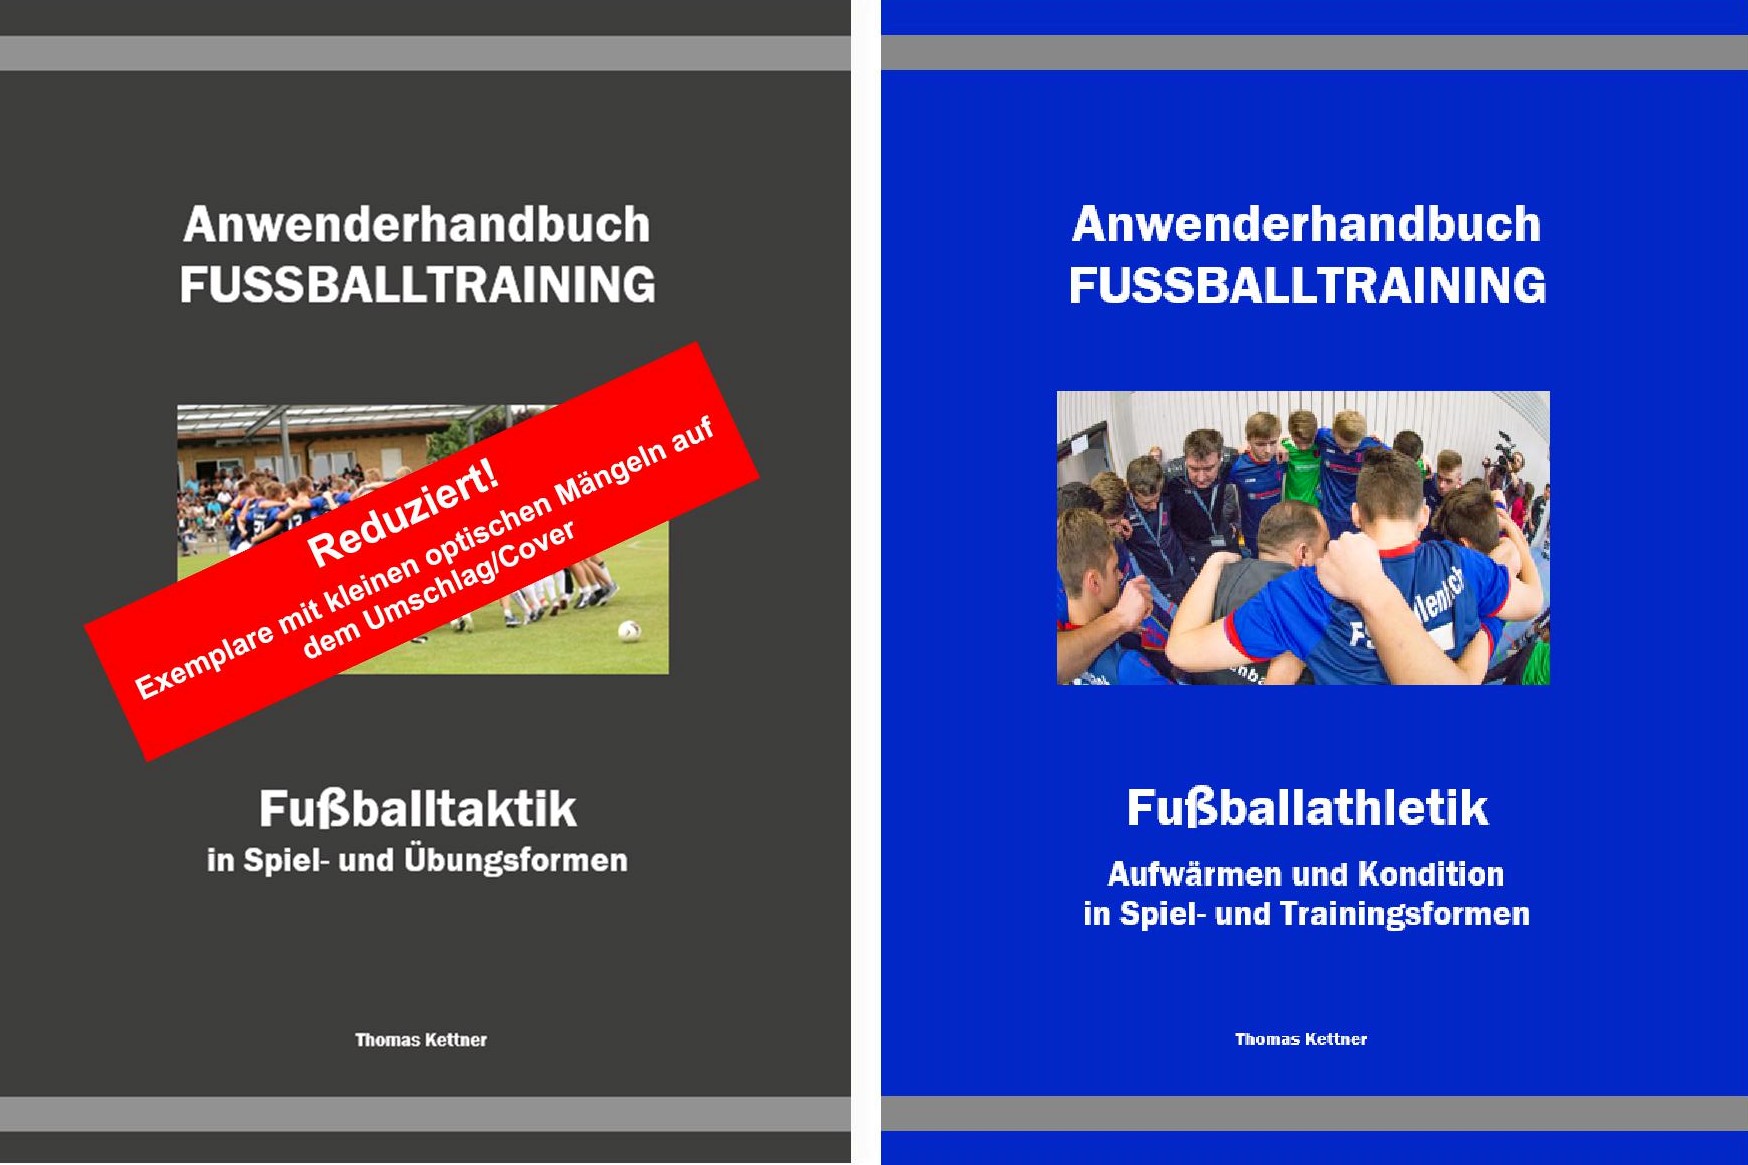 Beide Anwenderhandbücher zusammen<br> Das Taktik-Buch mit kleinen Mängeln am Cover/Umschlag. <br> Sonderpreis: 73,- €, zzgl. Versand